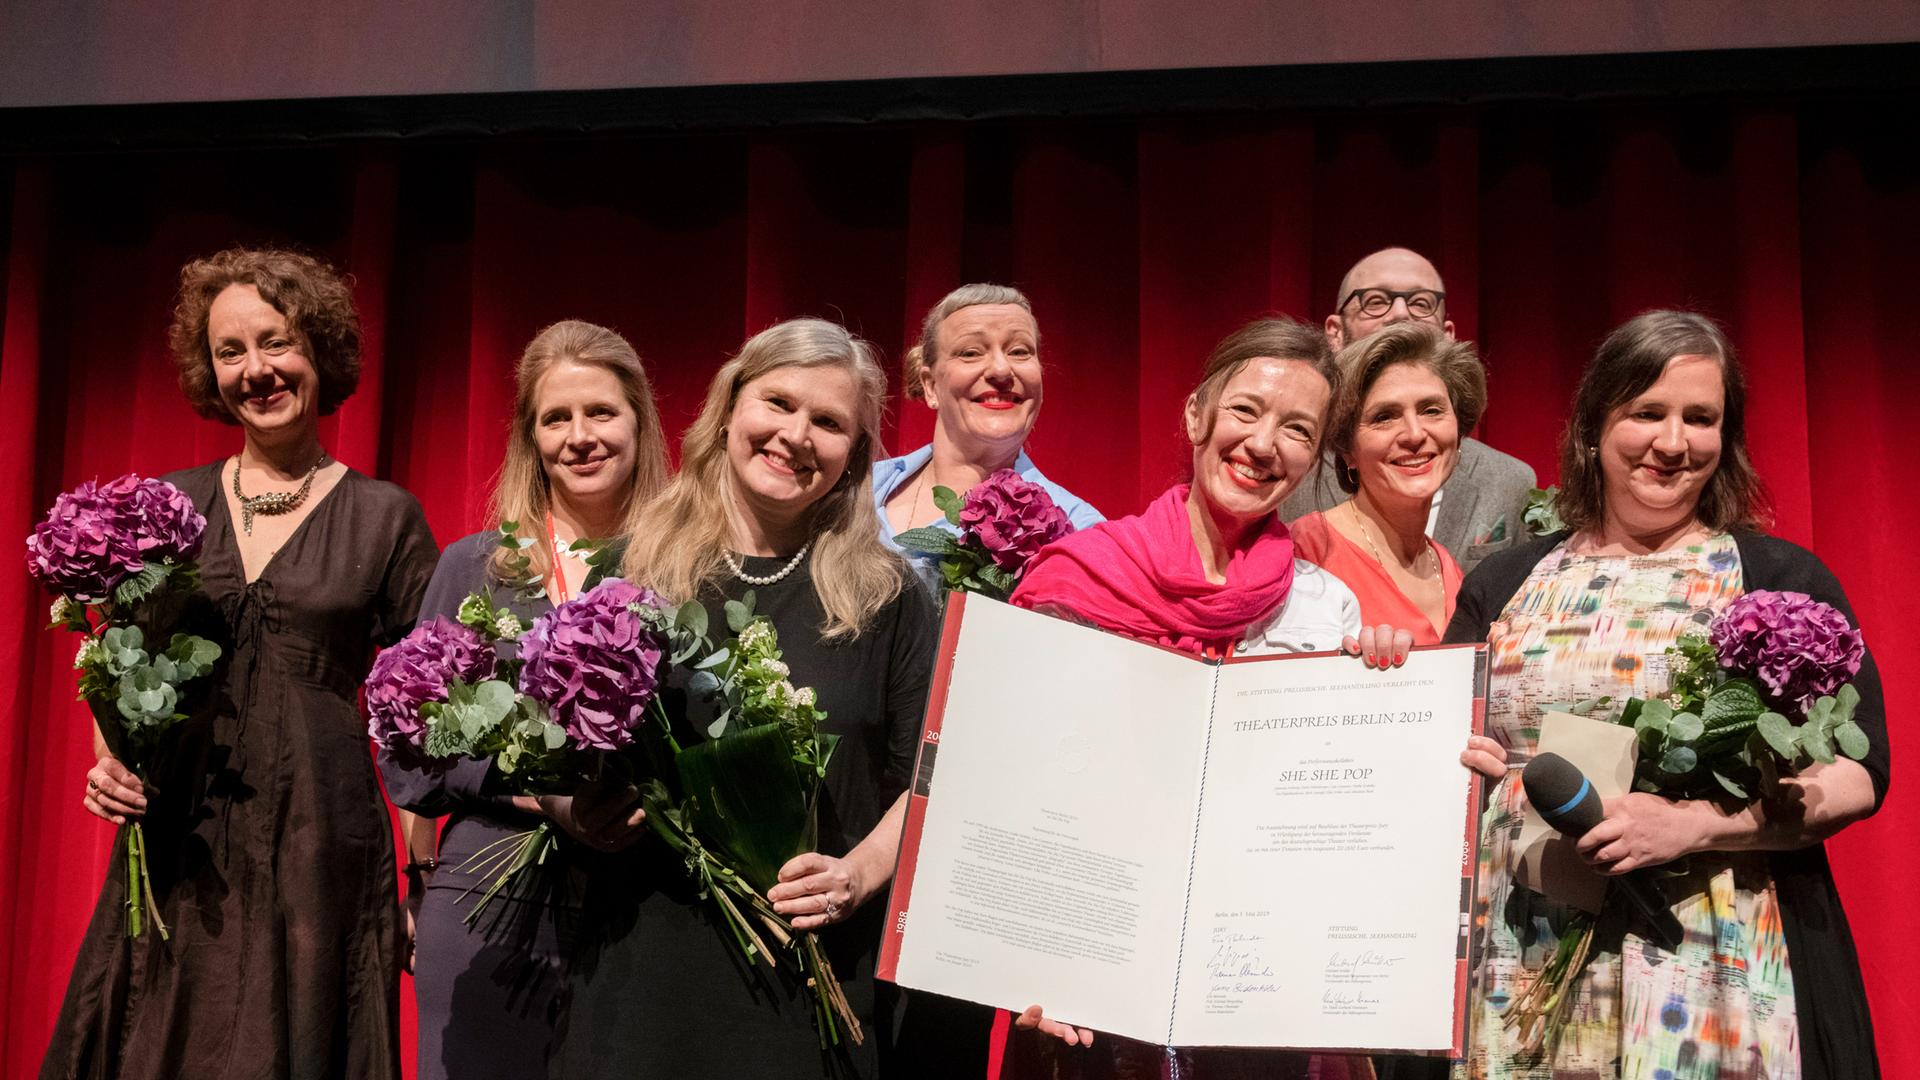 Die Mitglieder des Bühnenkollektivs "She She Pop" zeigen nach der Verleihung des Berliner Theaterpreises 2019 ihre Urkunde. 